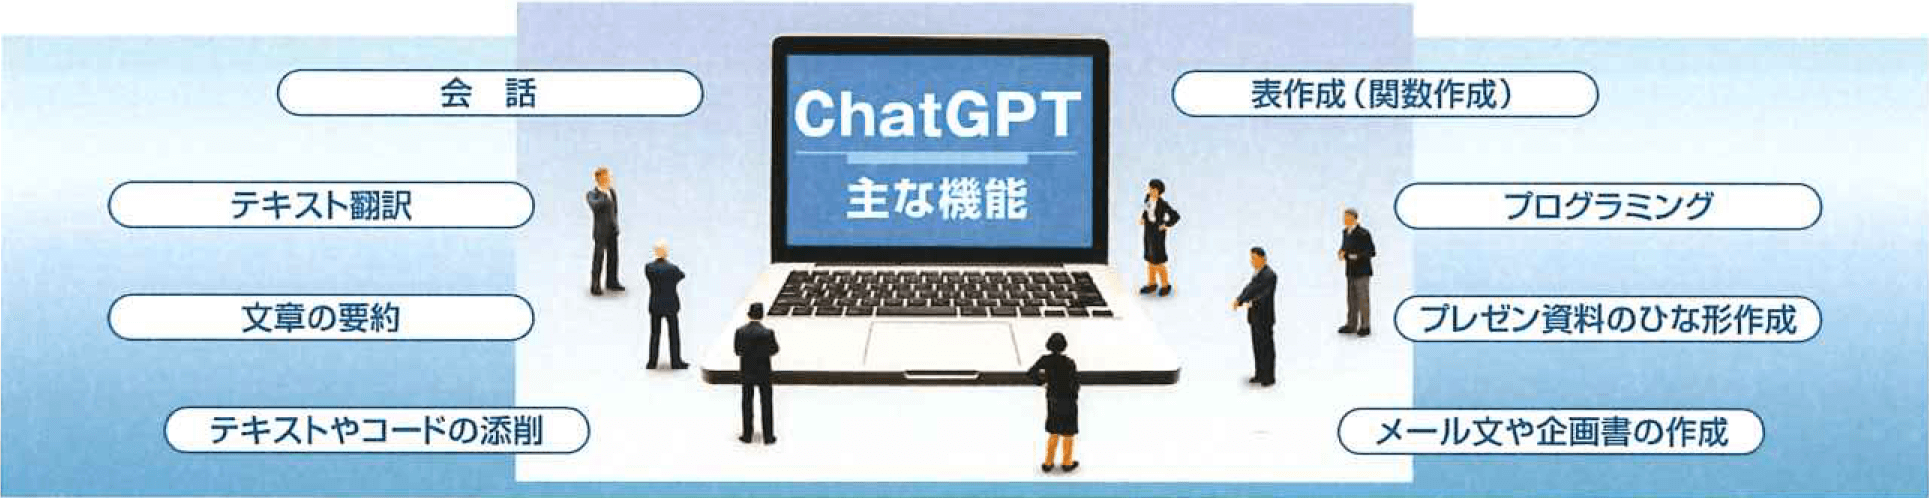 ChatGPT主な機能：会話、テキスト翻訳、文章の要約、テキストやコードの添削、表作成（関数作成）、プログラミング、プレゼン資料のひな形作成、メール文や企画書の作成